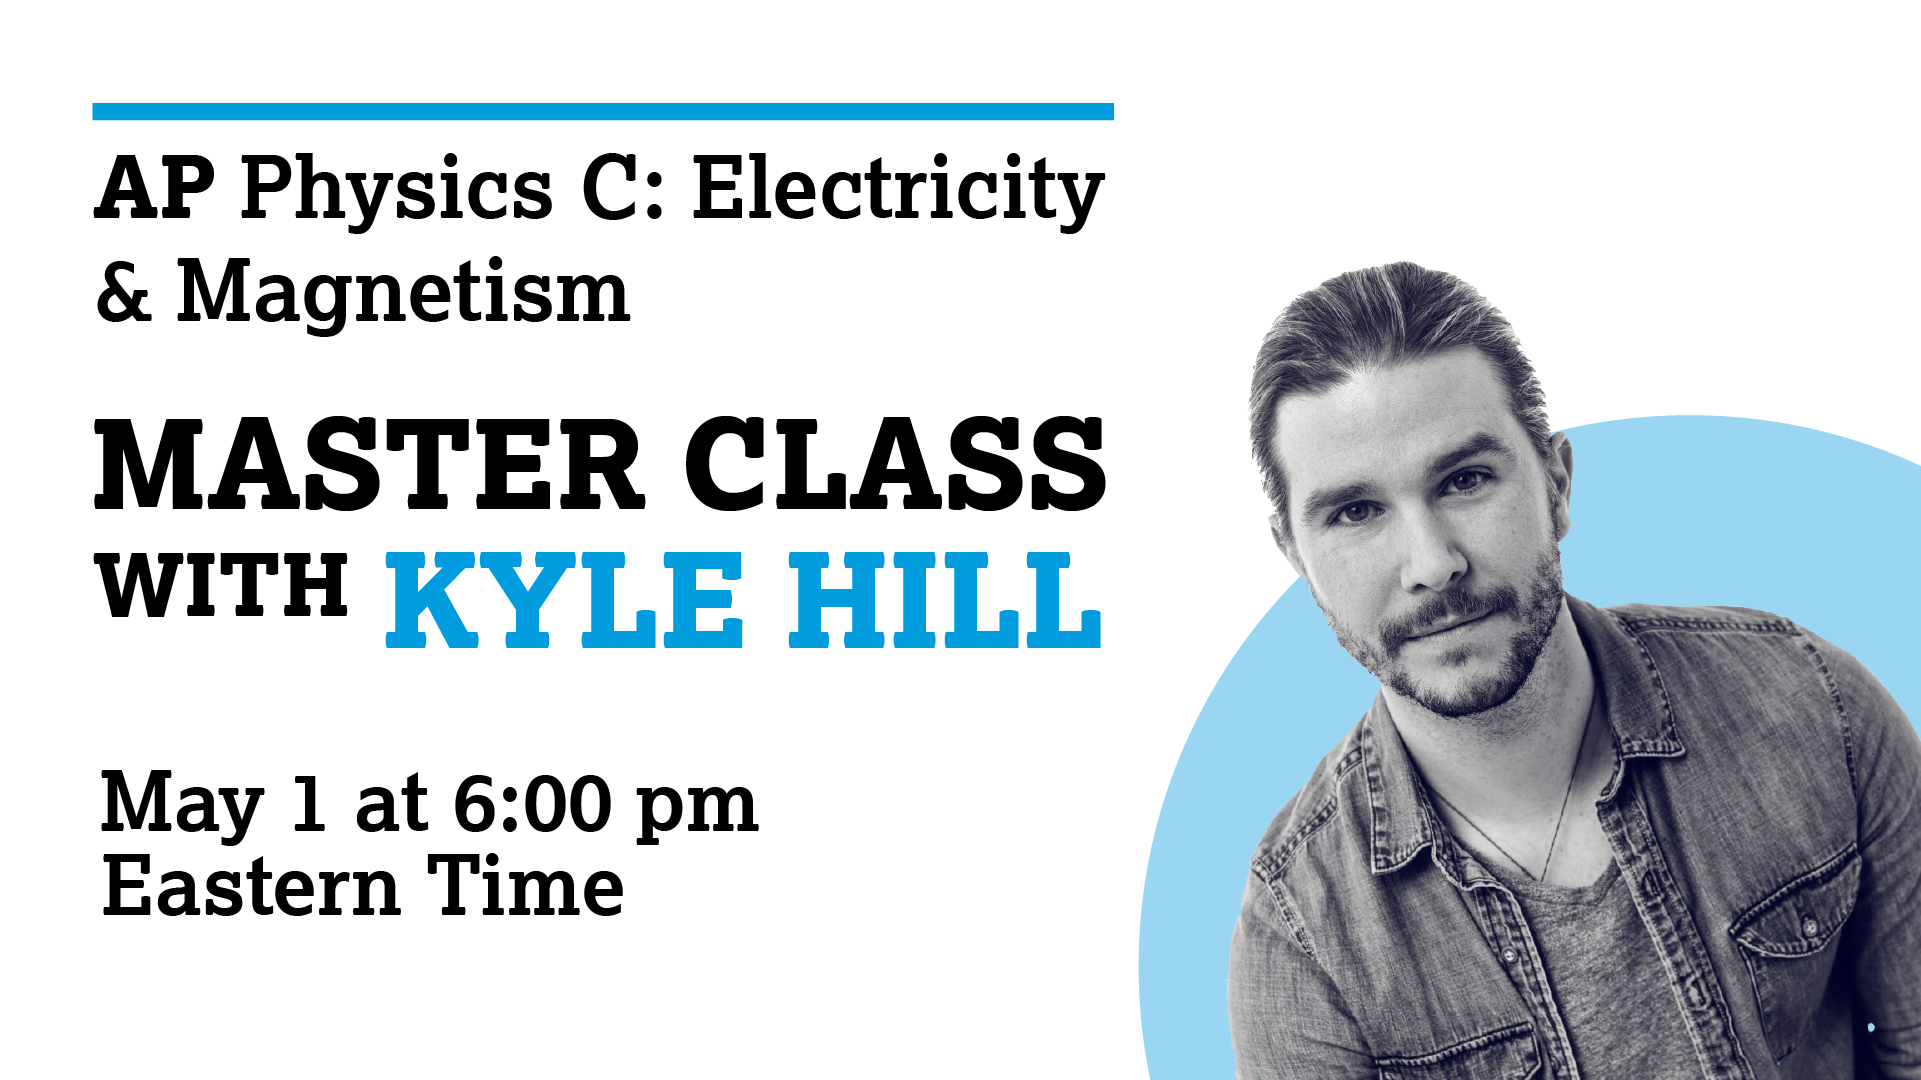 Kyle Hill AP Master Class